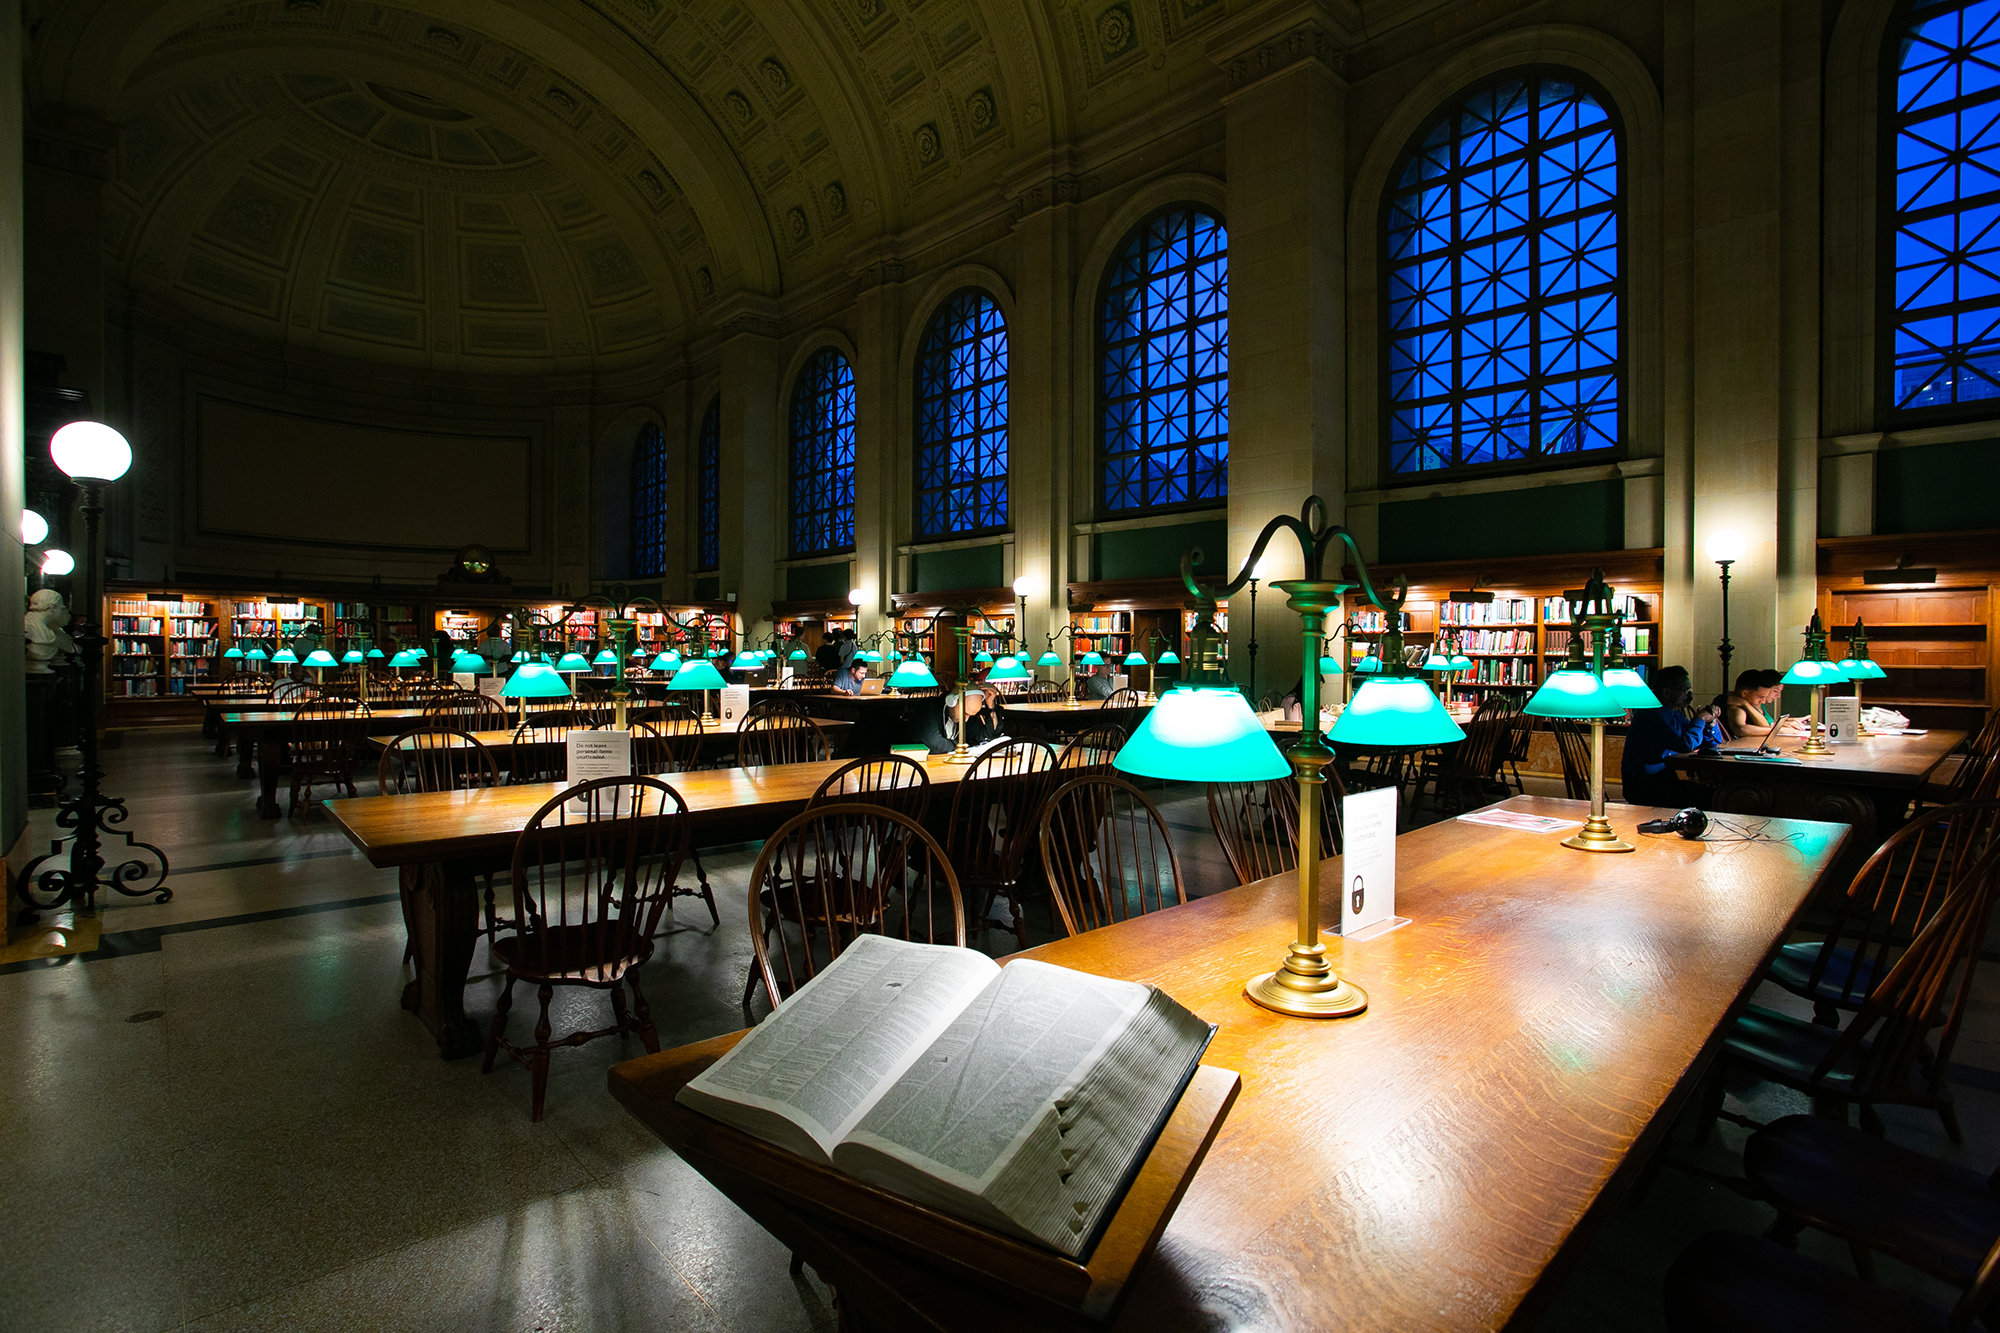 ボストンパブリックライブラリー図書館では豪華なルネッサンス様式の設計が施された歴史的な図書館！